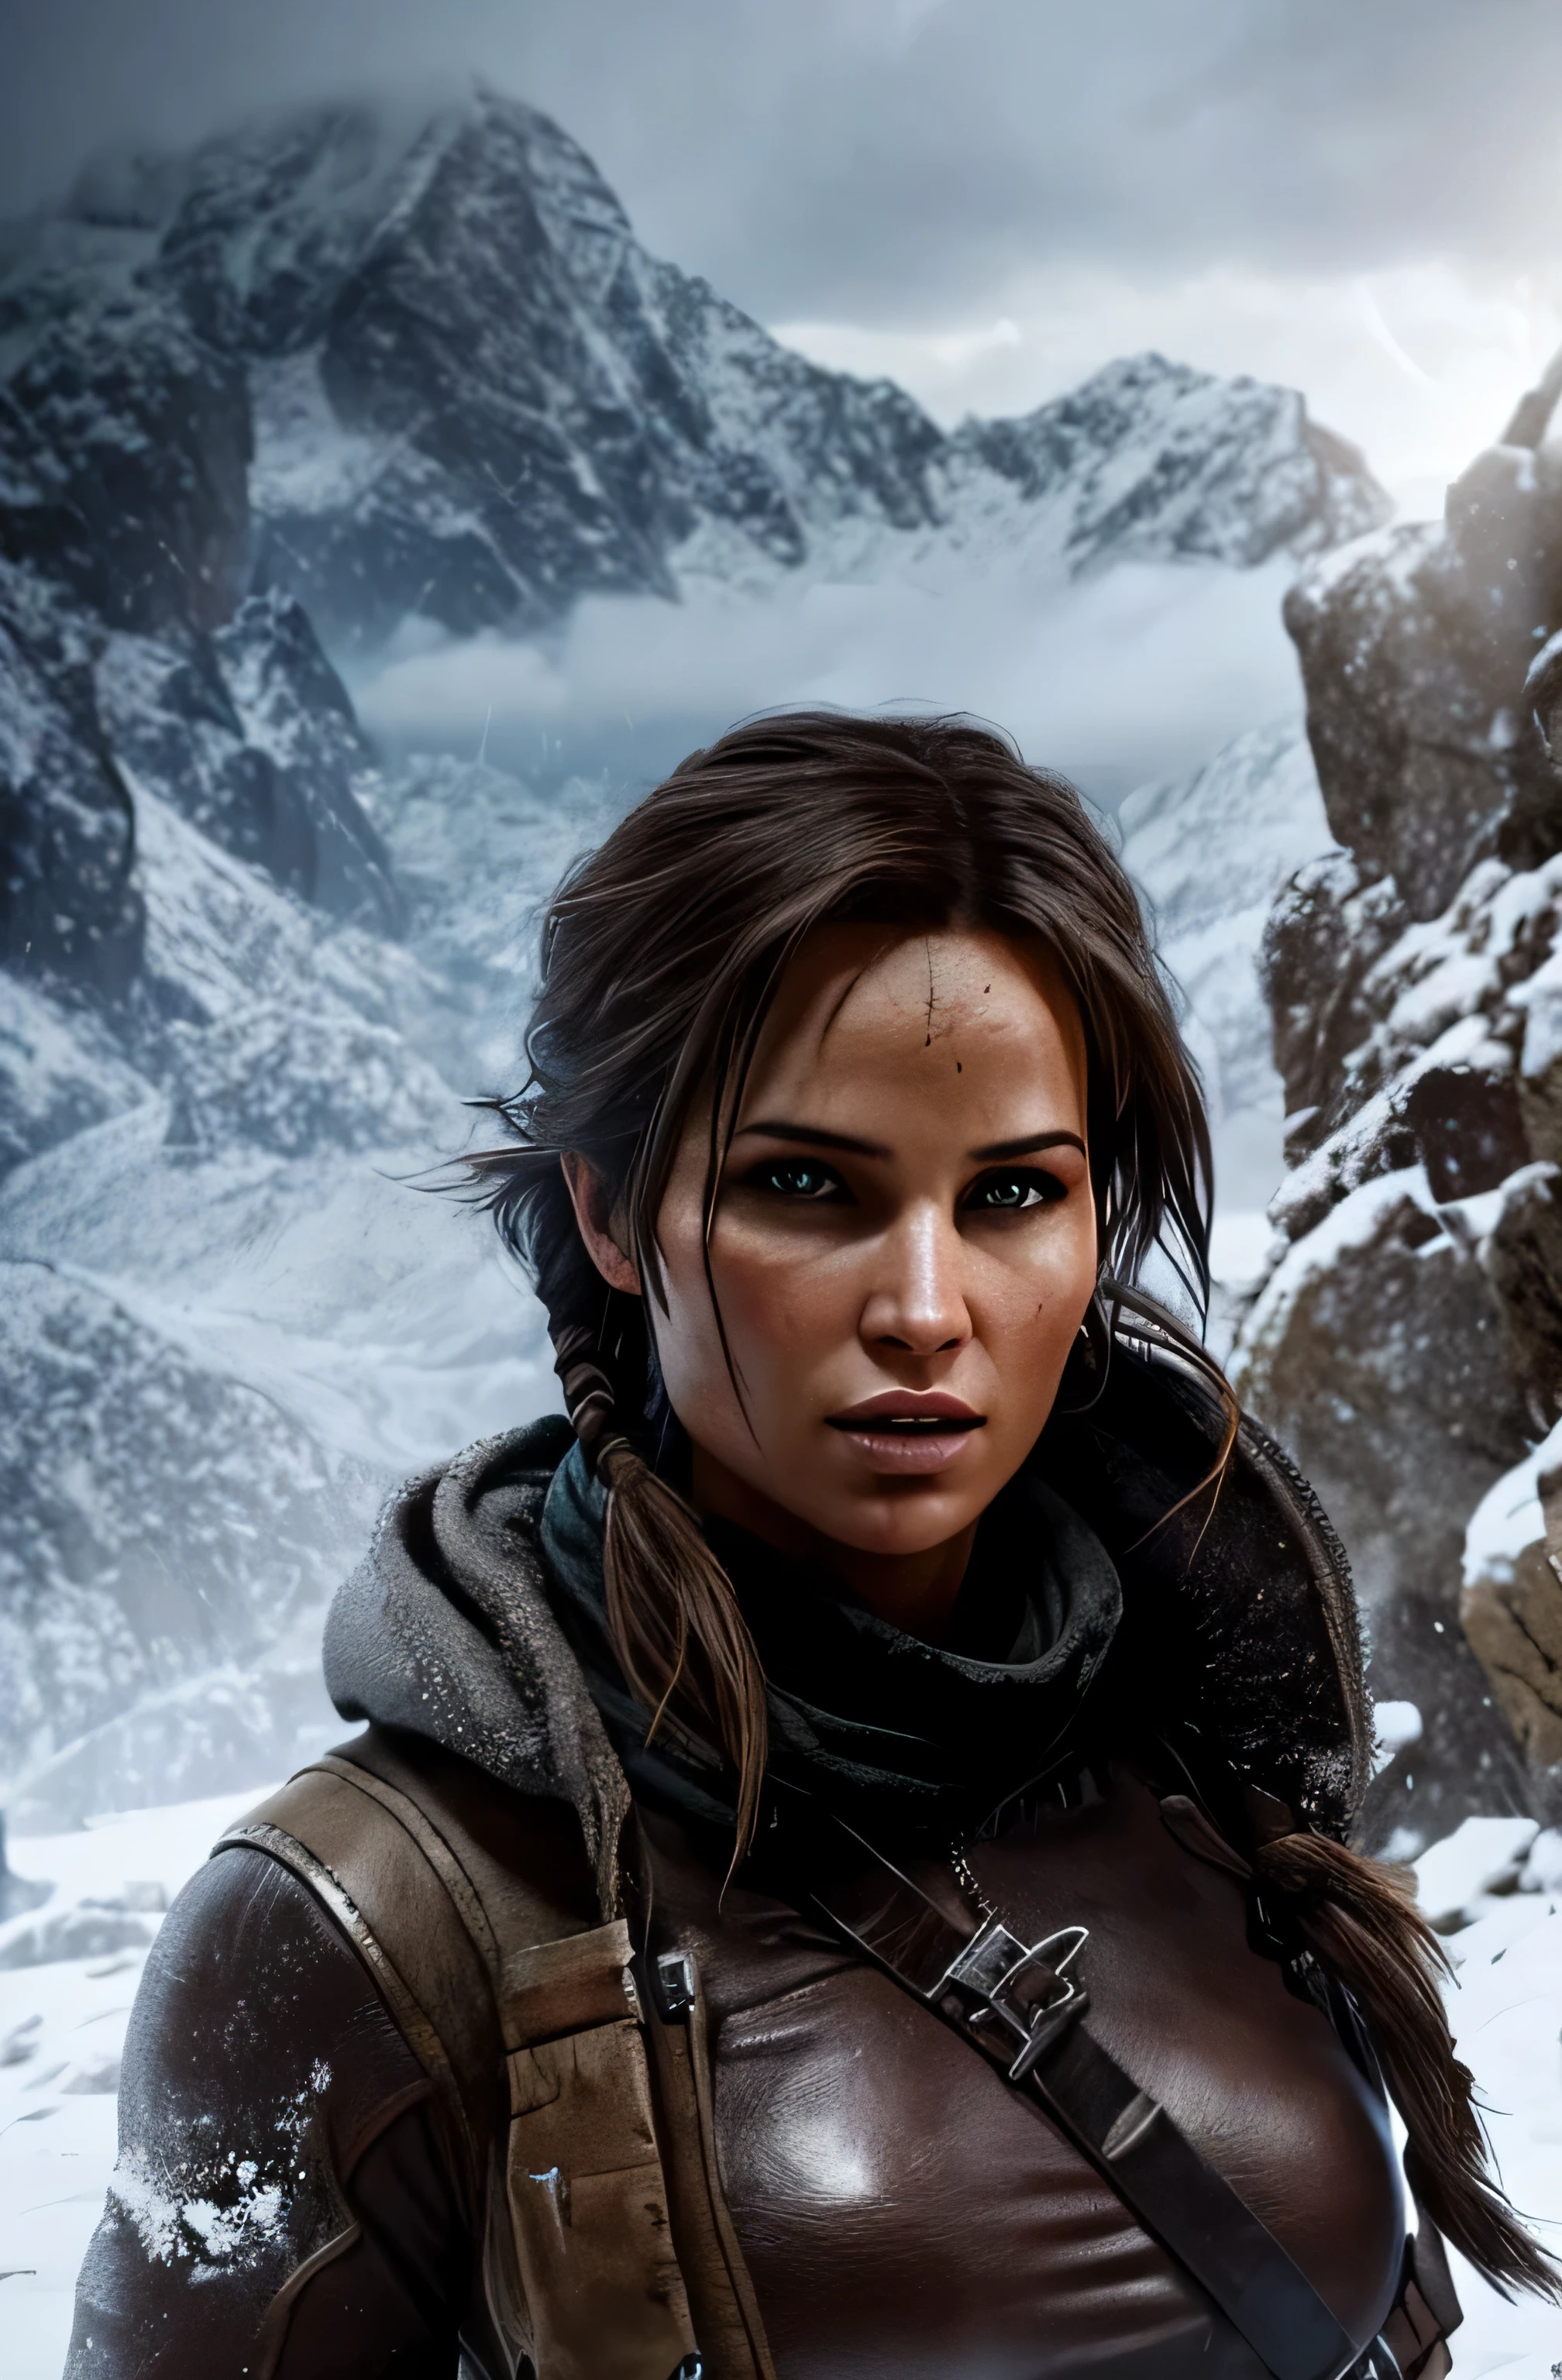 Lara Croft, Hermoso, cara perfecta, mirada sexy, El pelo al viento en un entorno de escalada medieval, viento helado, tormenta de nieve, Sturm, Montañas, impresionante paisaje, iluminación dramática